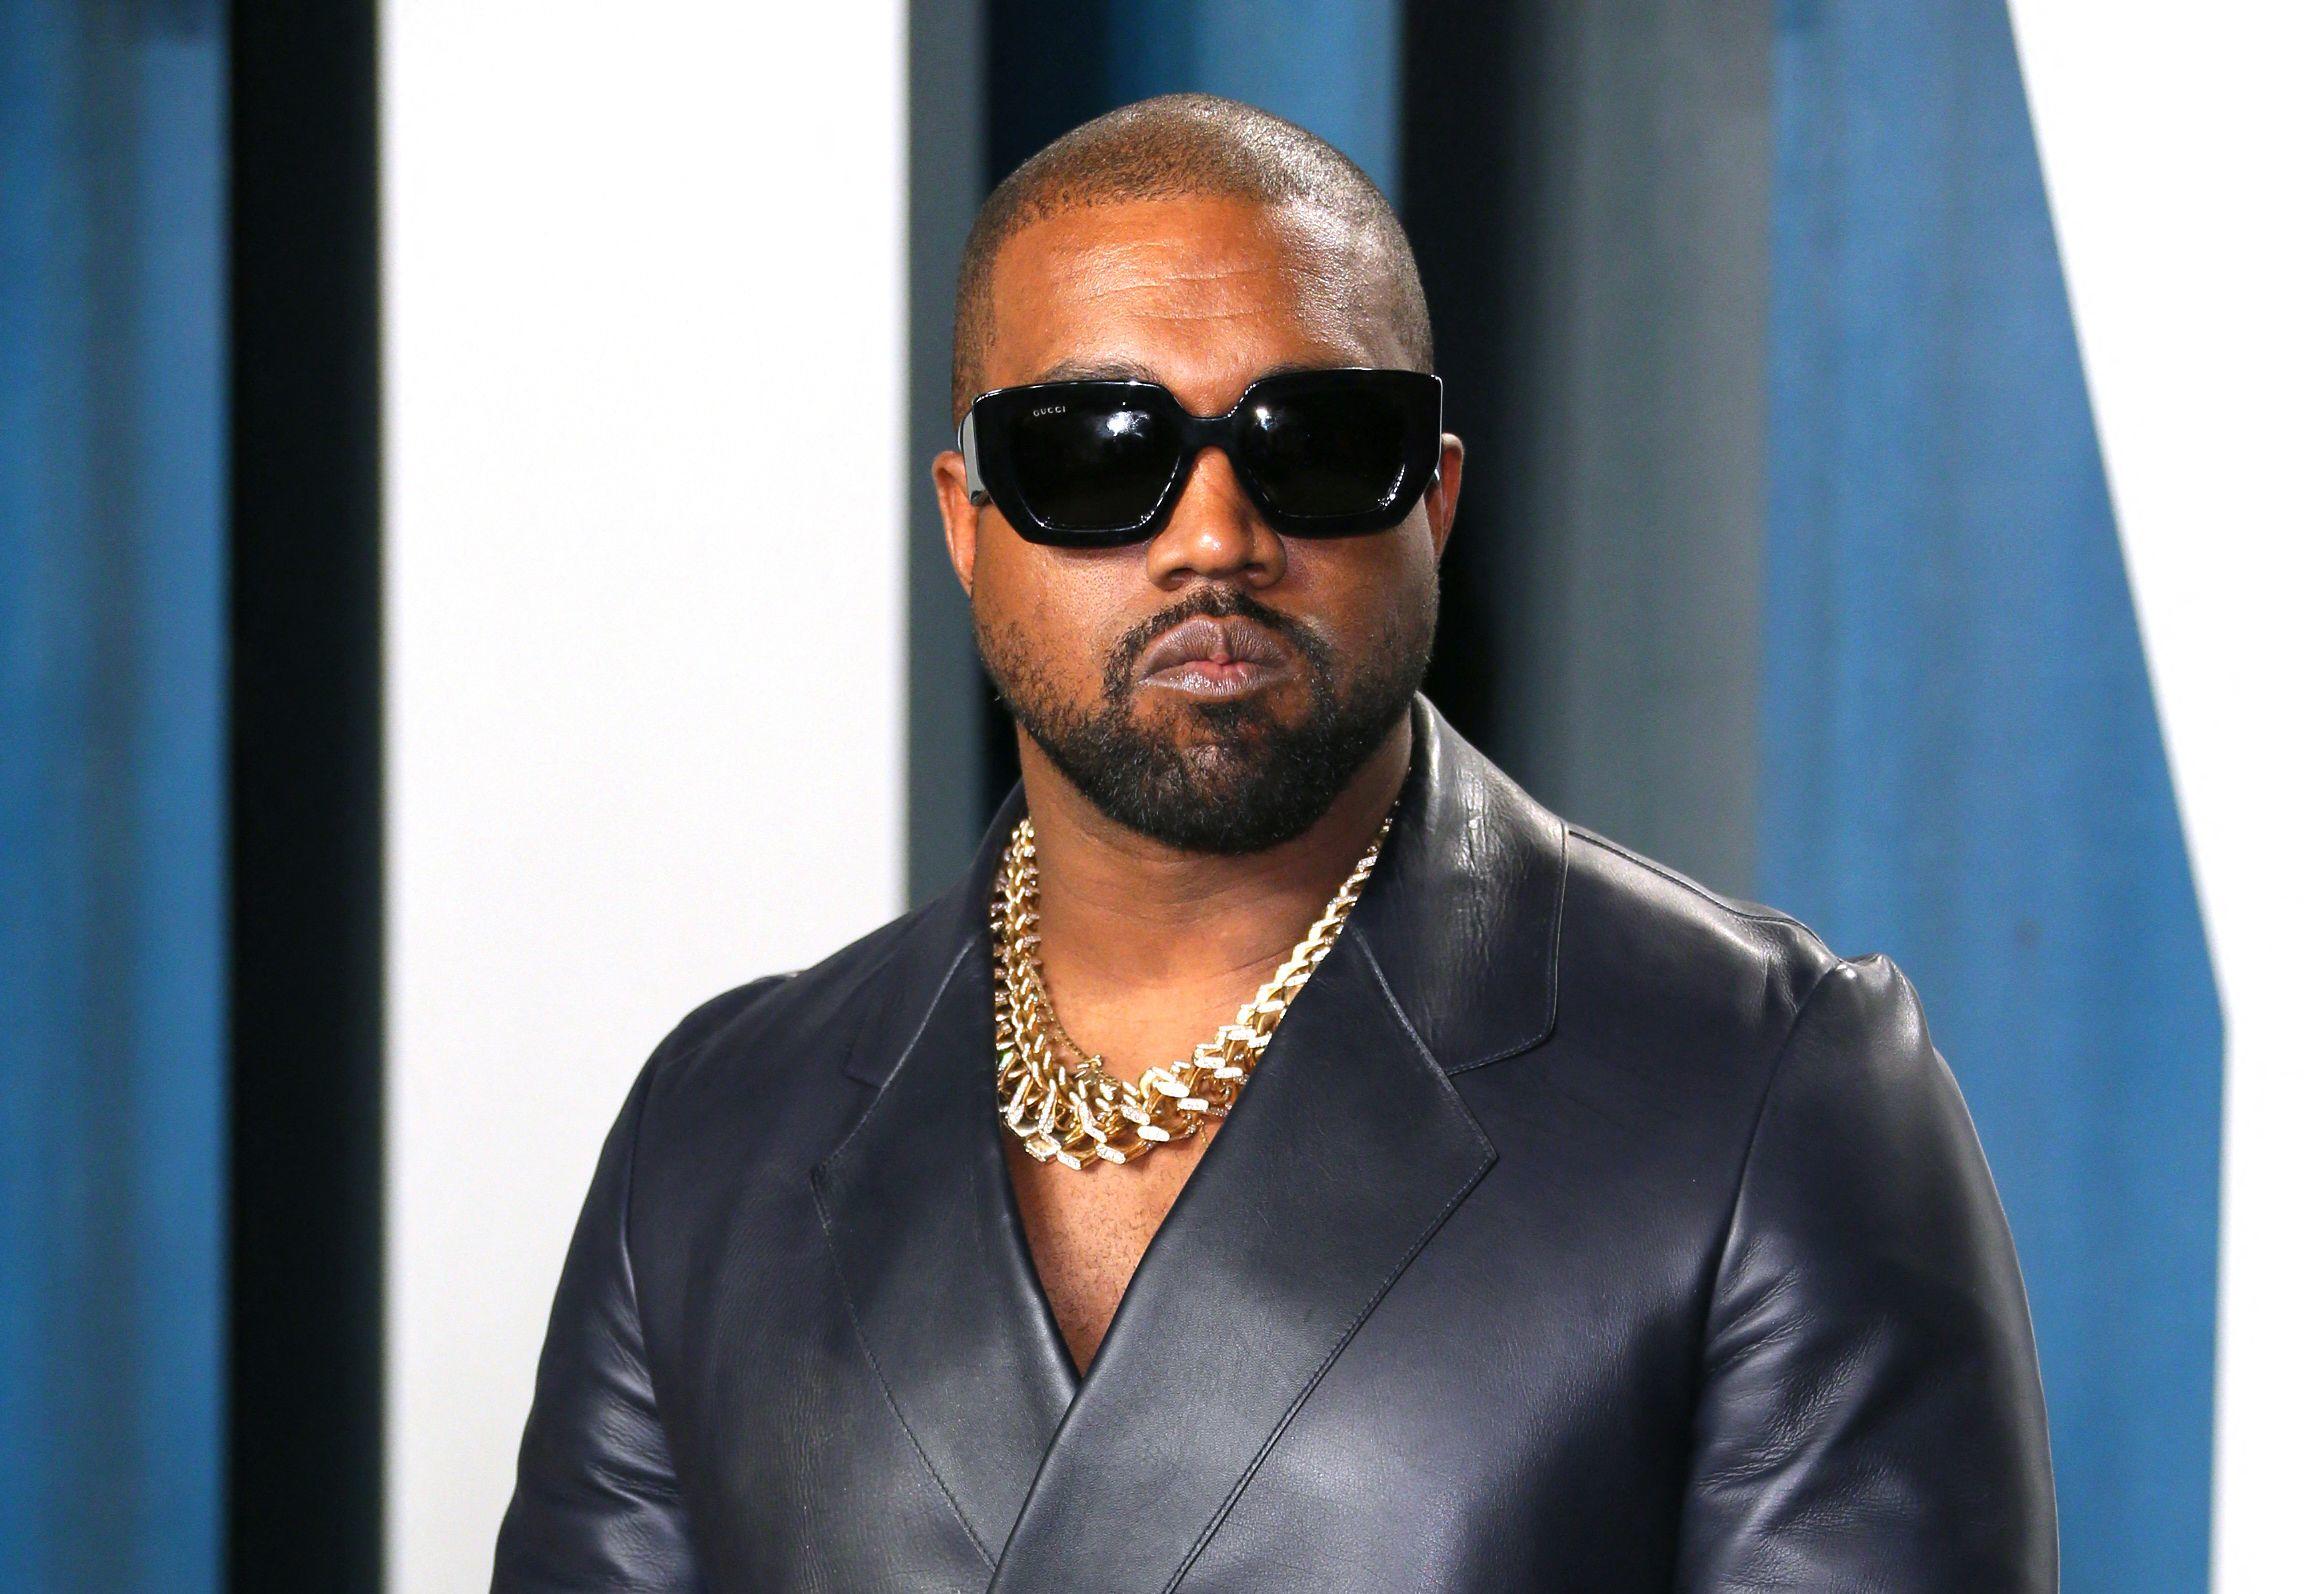 Le rappeur américain Kanye West a été récemment mis à l'écart par plusieurs partenaires commerciaux, après des propos antisémites. Jean-Baptiste Lacroix / AFP